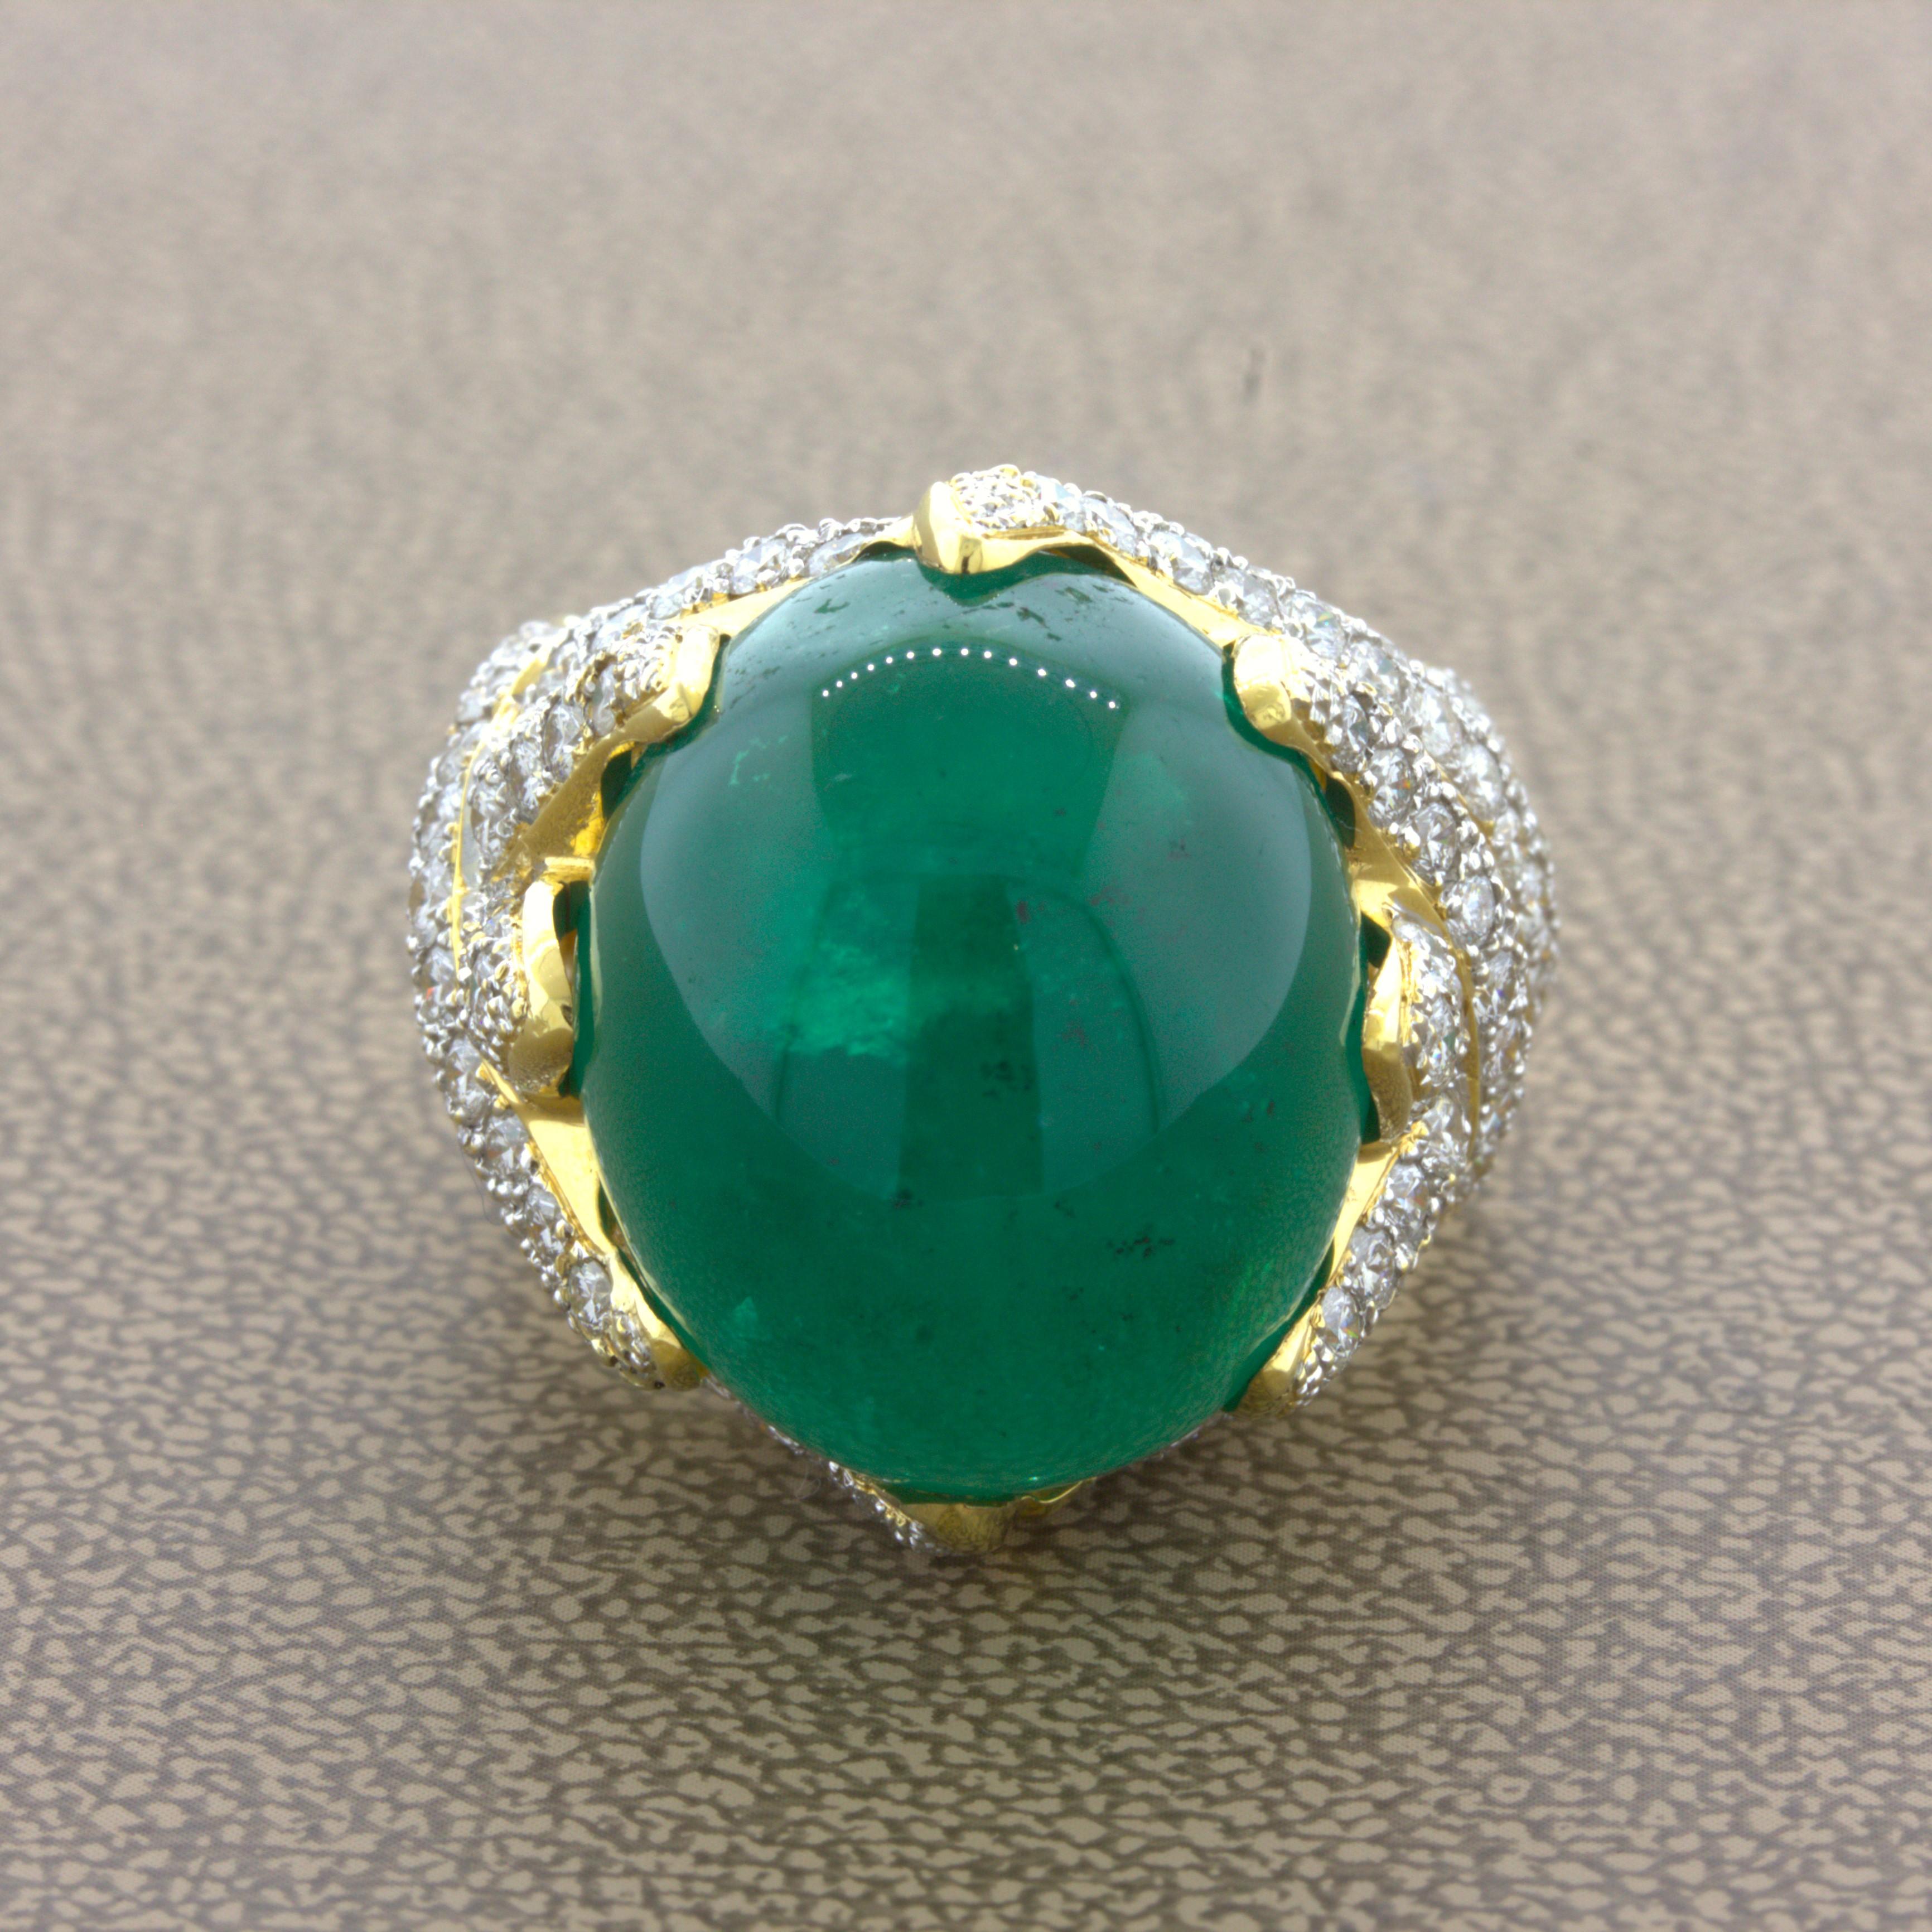 26,67 Karat kolumbianischer Smaragd-Diamant 18K Gelbgold Cocktail Ring, AGL zertifiziert

Ein wunderschöner, lebhaft grüner kolumbianischer Smaragd steht im Mittelpunkt des Geschehens. Er hat eine satte, leuchtende Farbe und wiegt beeindruckende